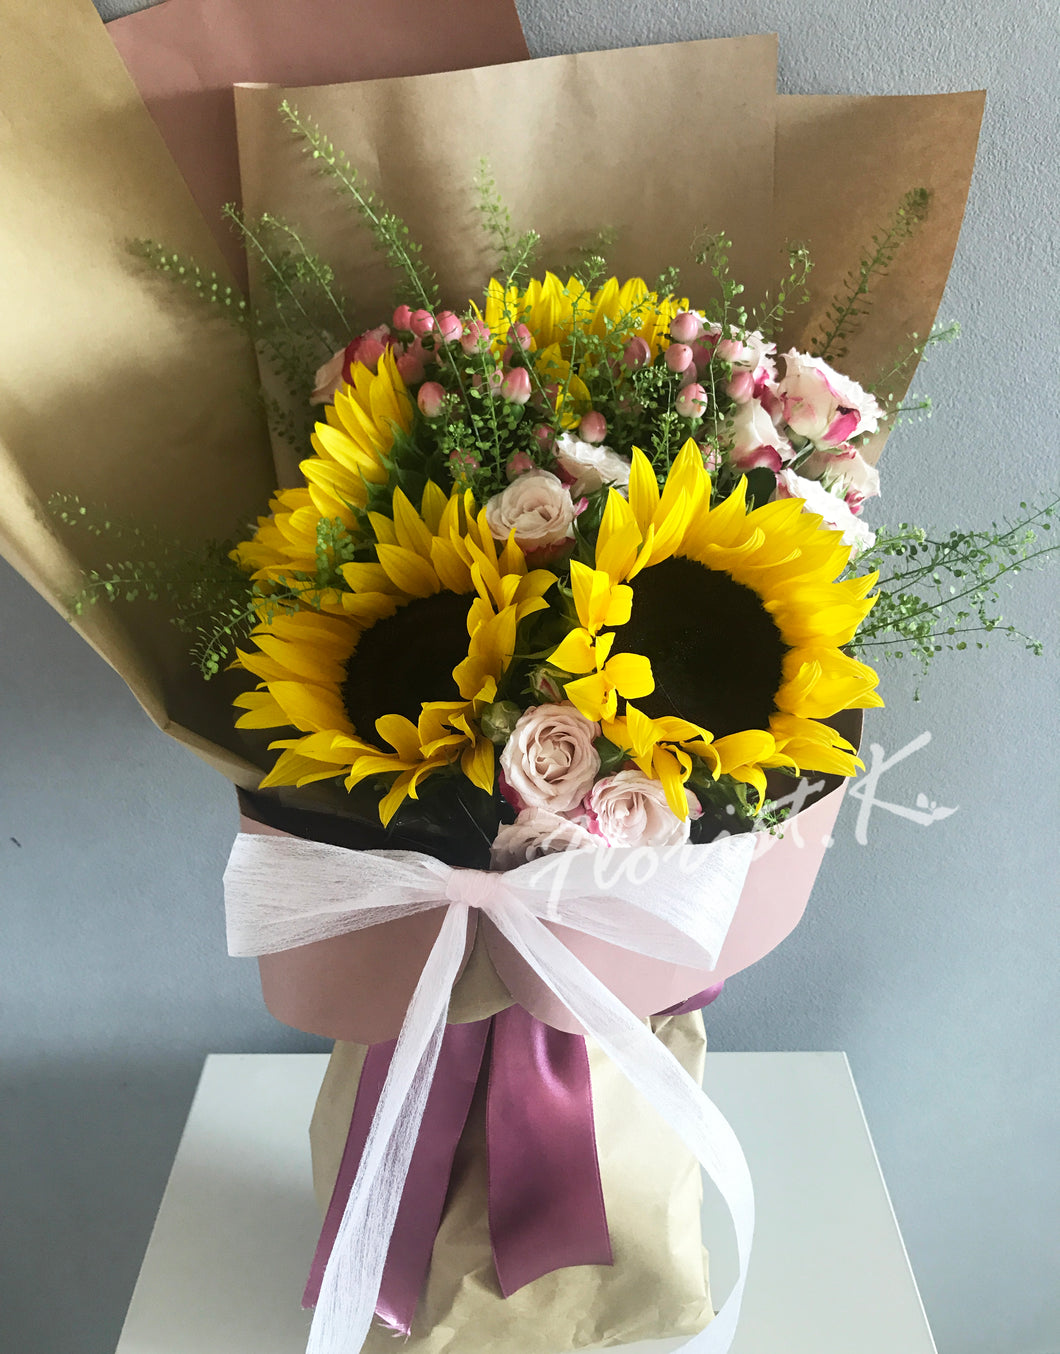 sunflower flower bouquet